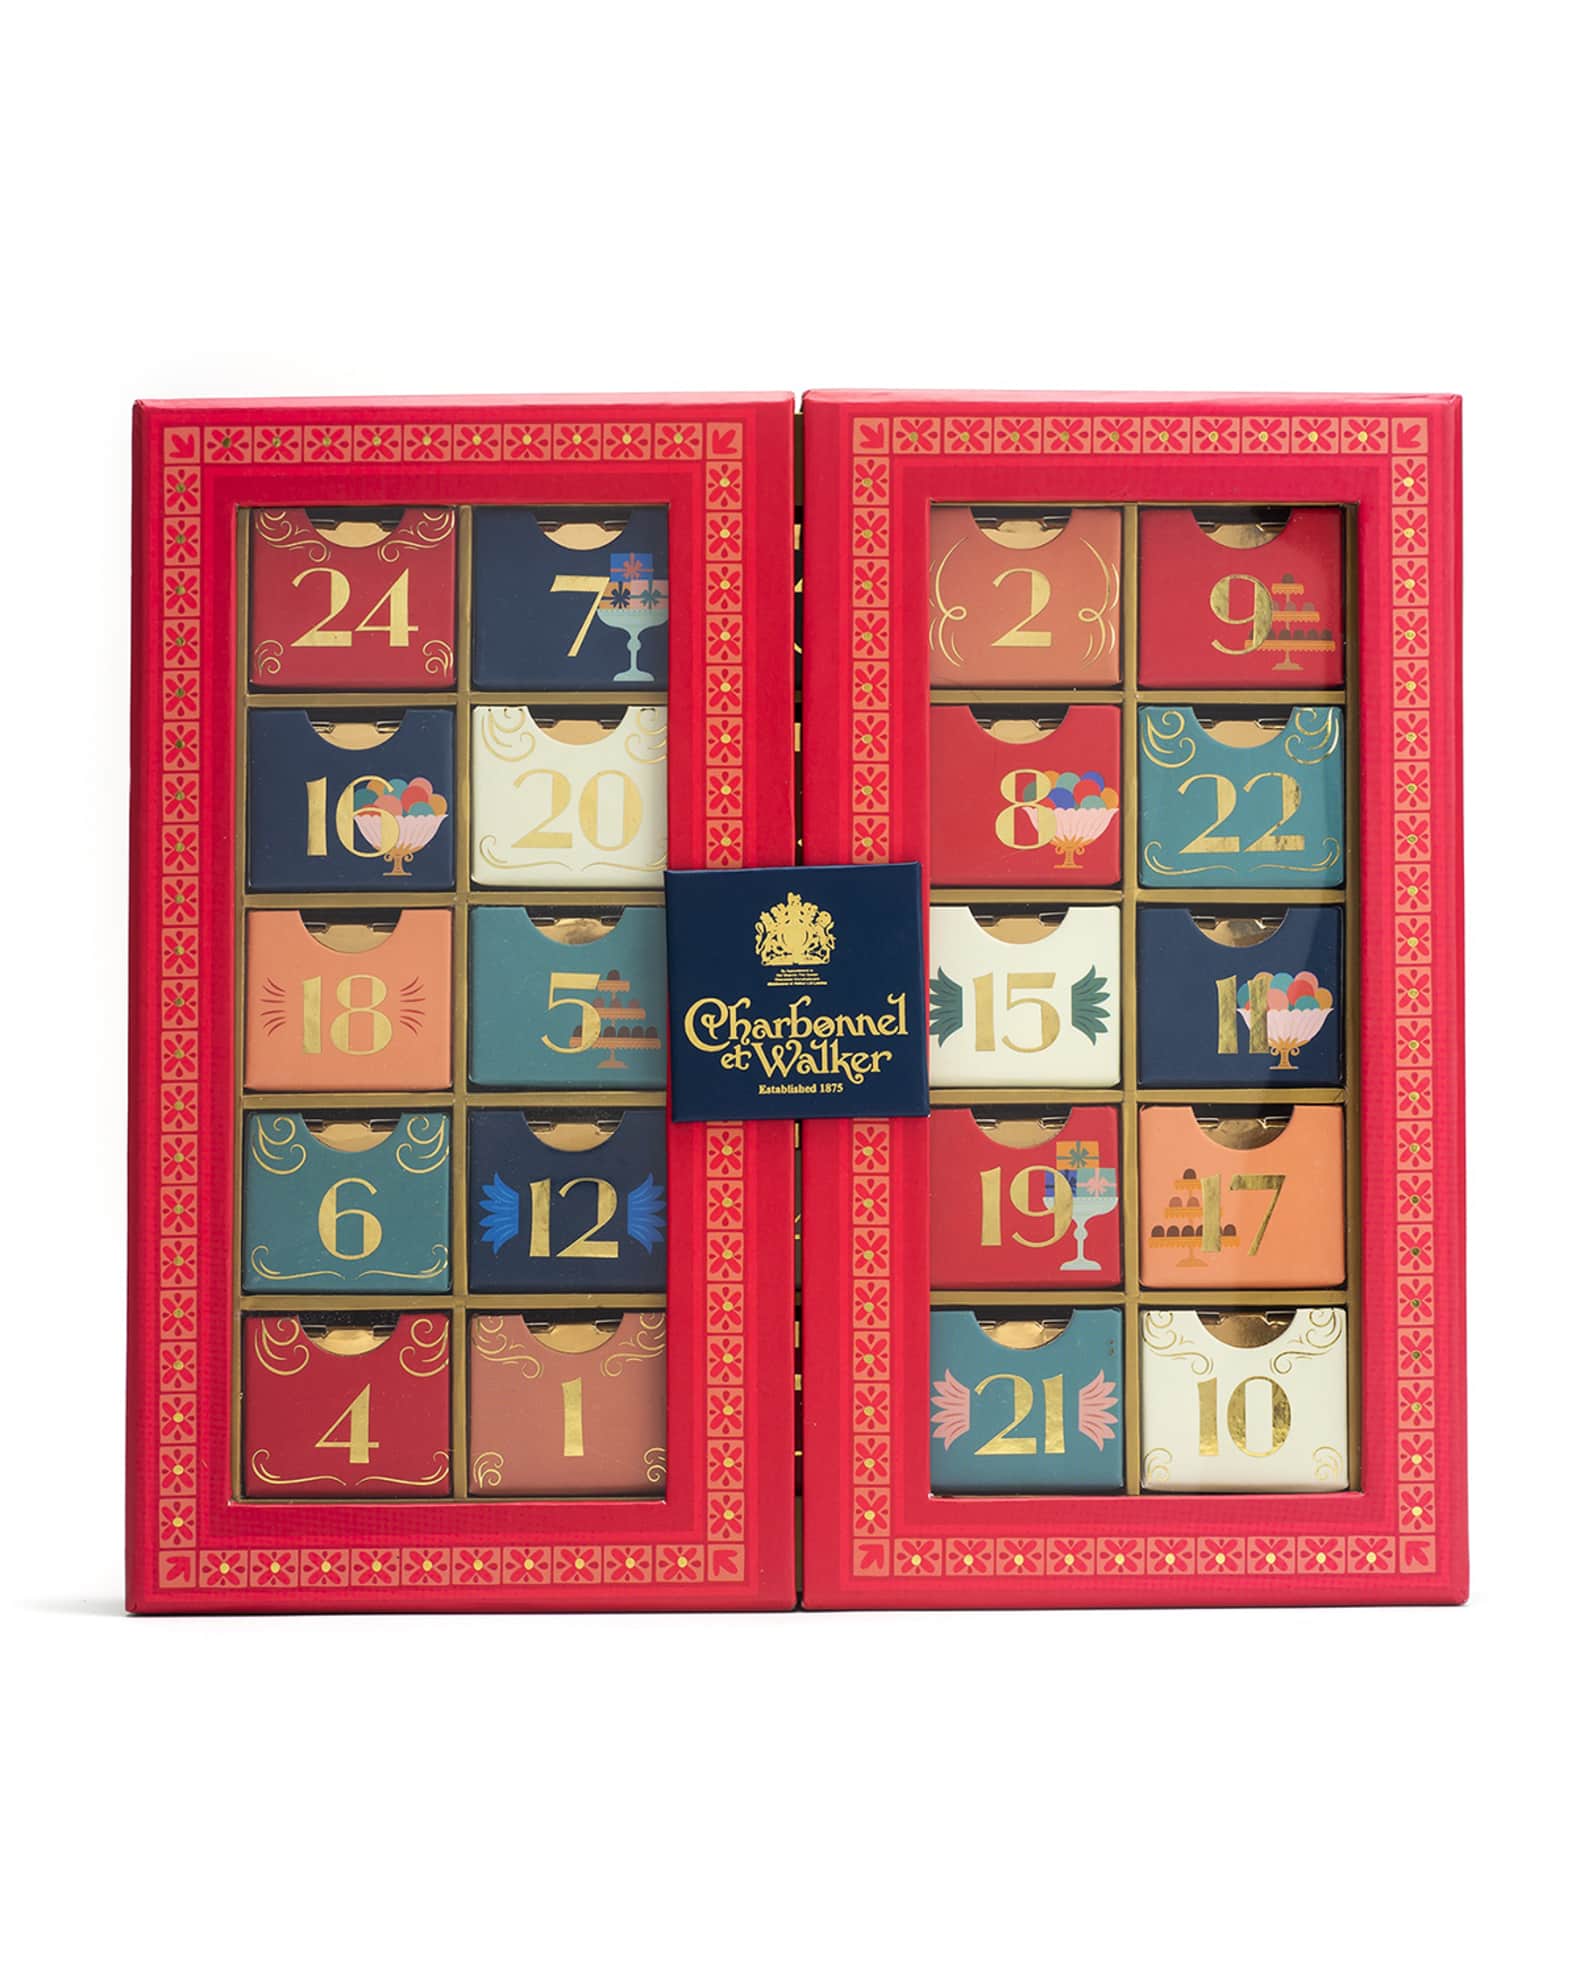 Charbonnel et Walker Truffle Selection Advent Calendar 295g